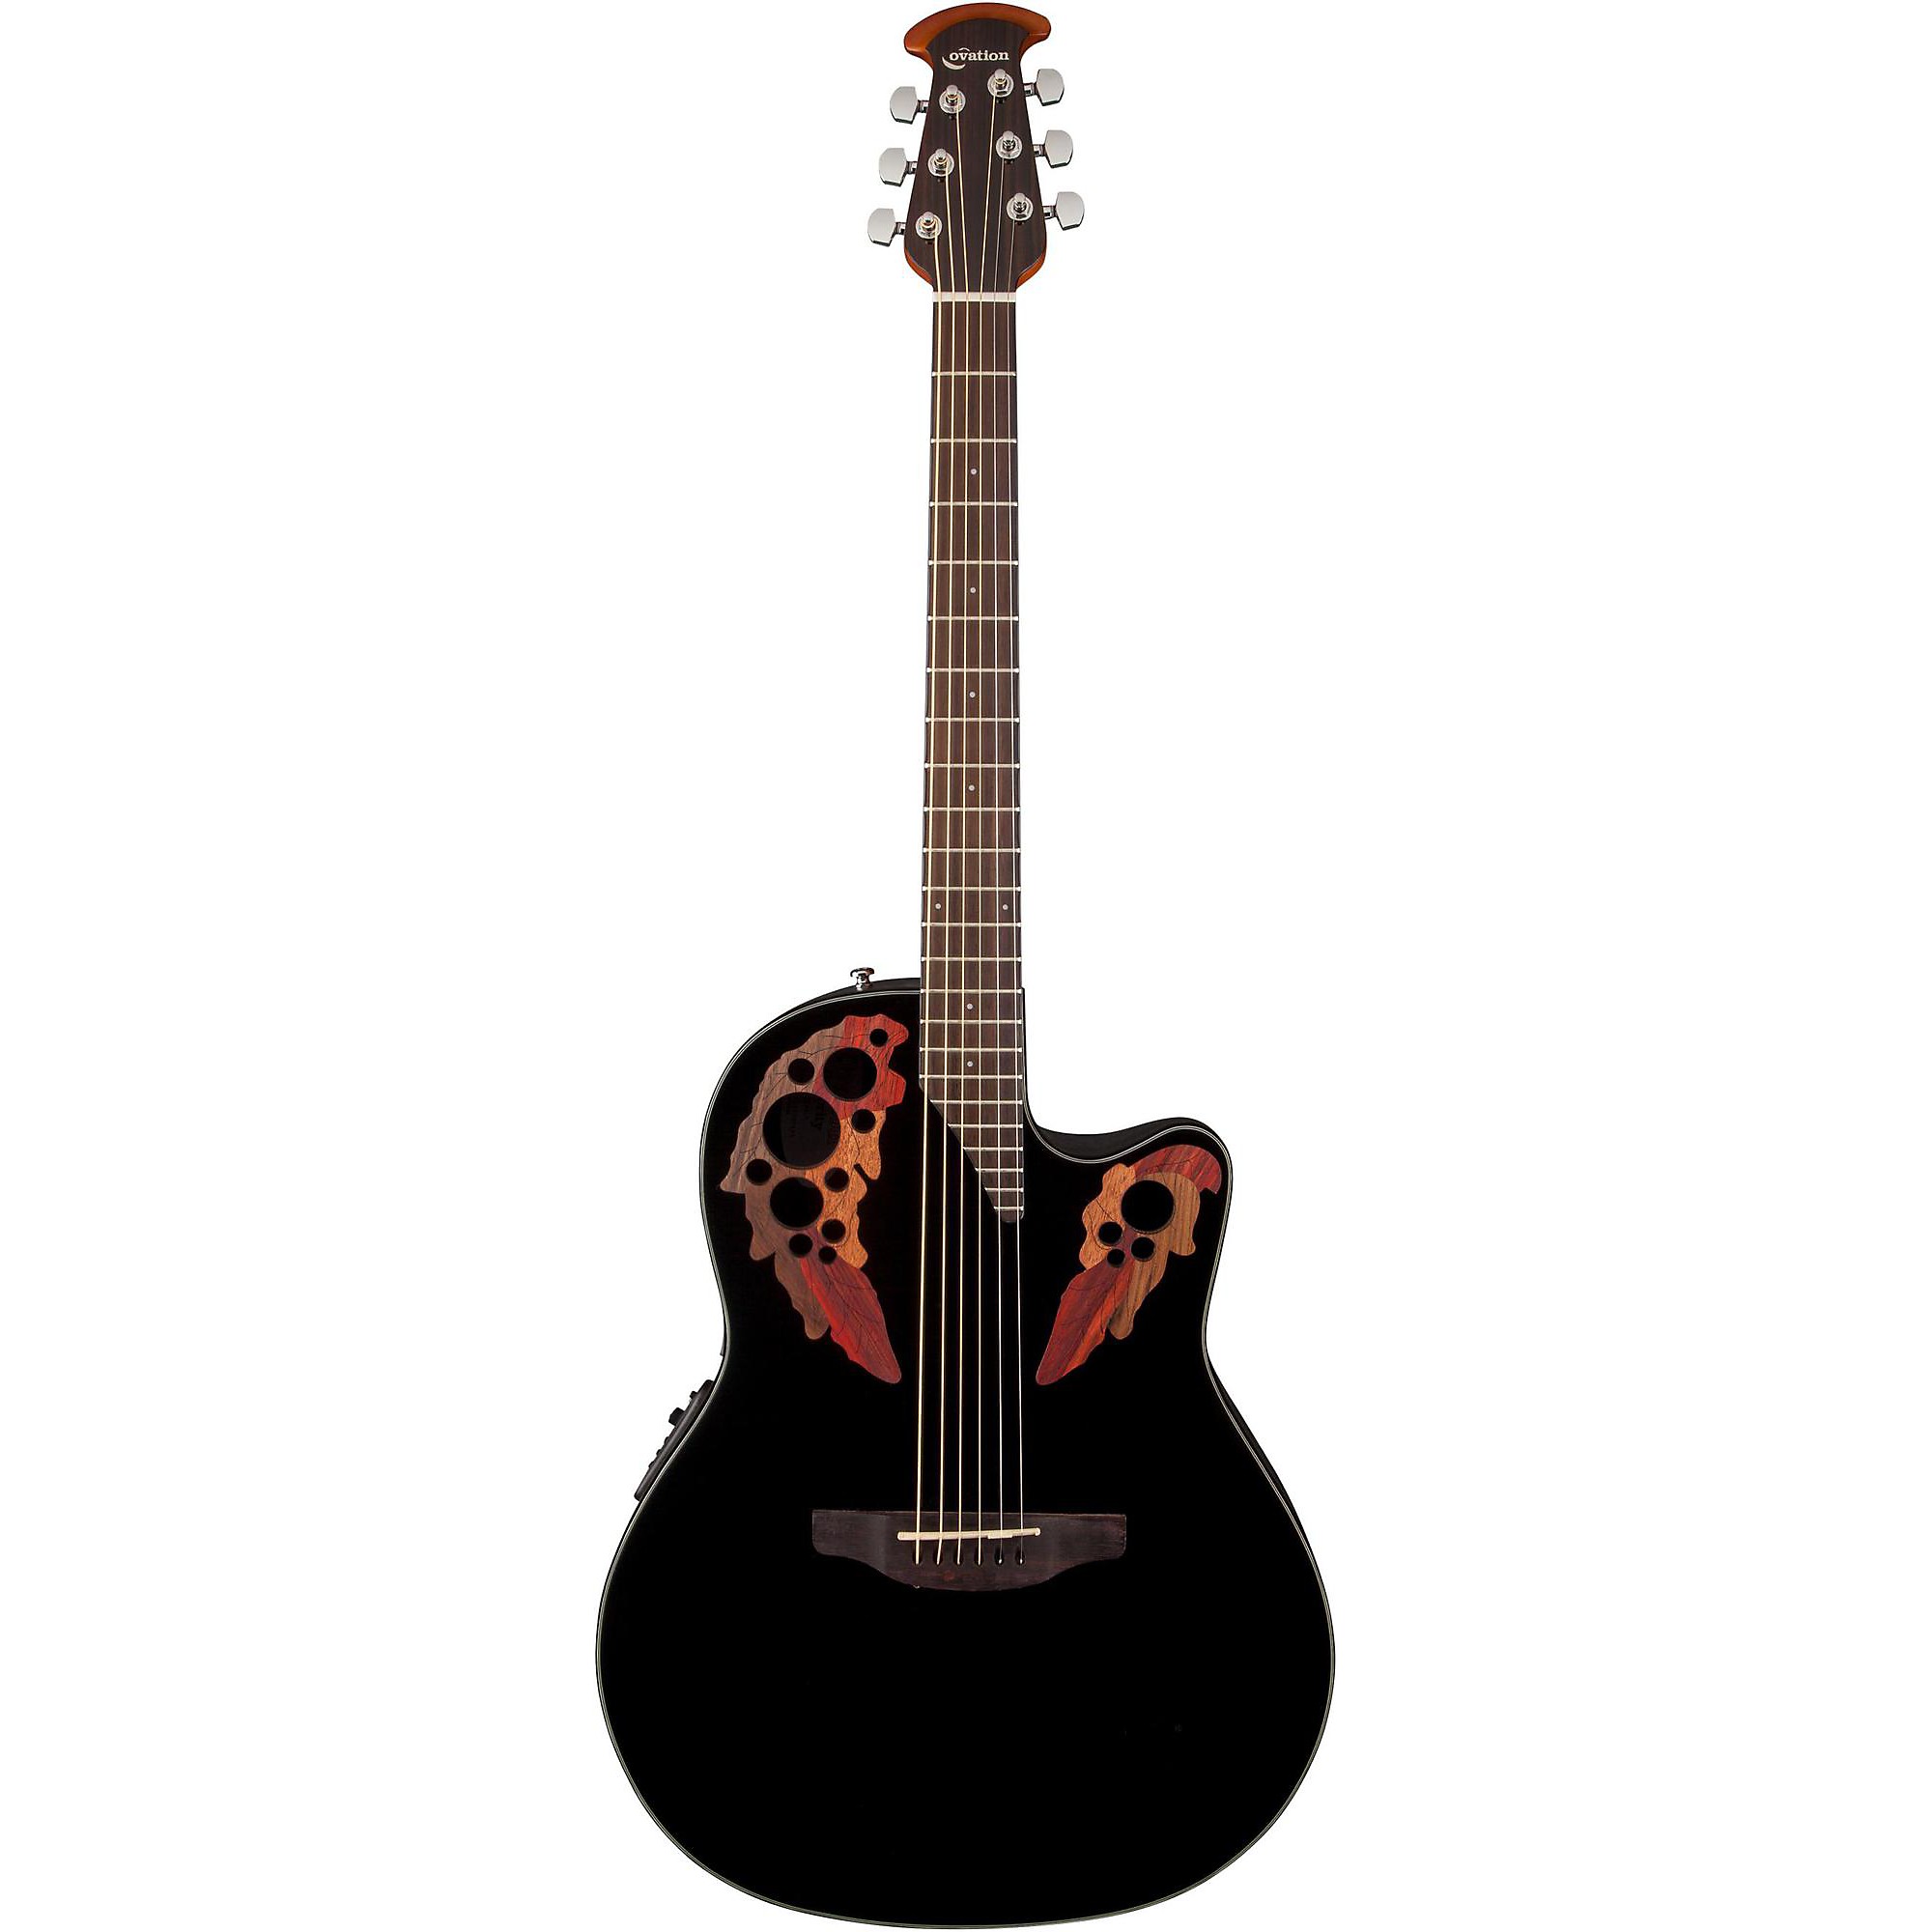 Акустически-электрическая гитара Ovation Celebrity Elite, черная фото